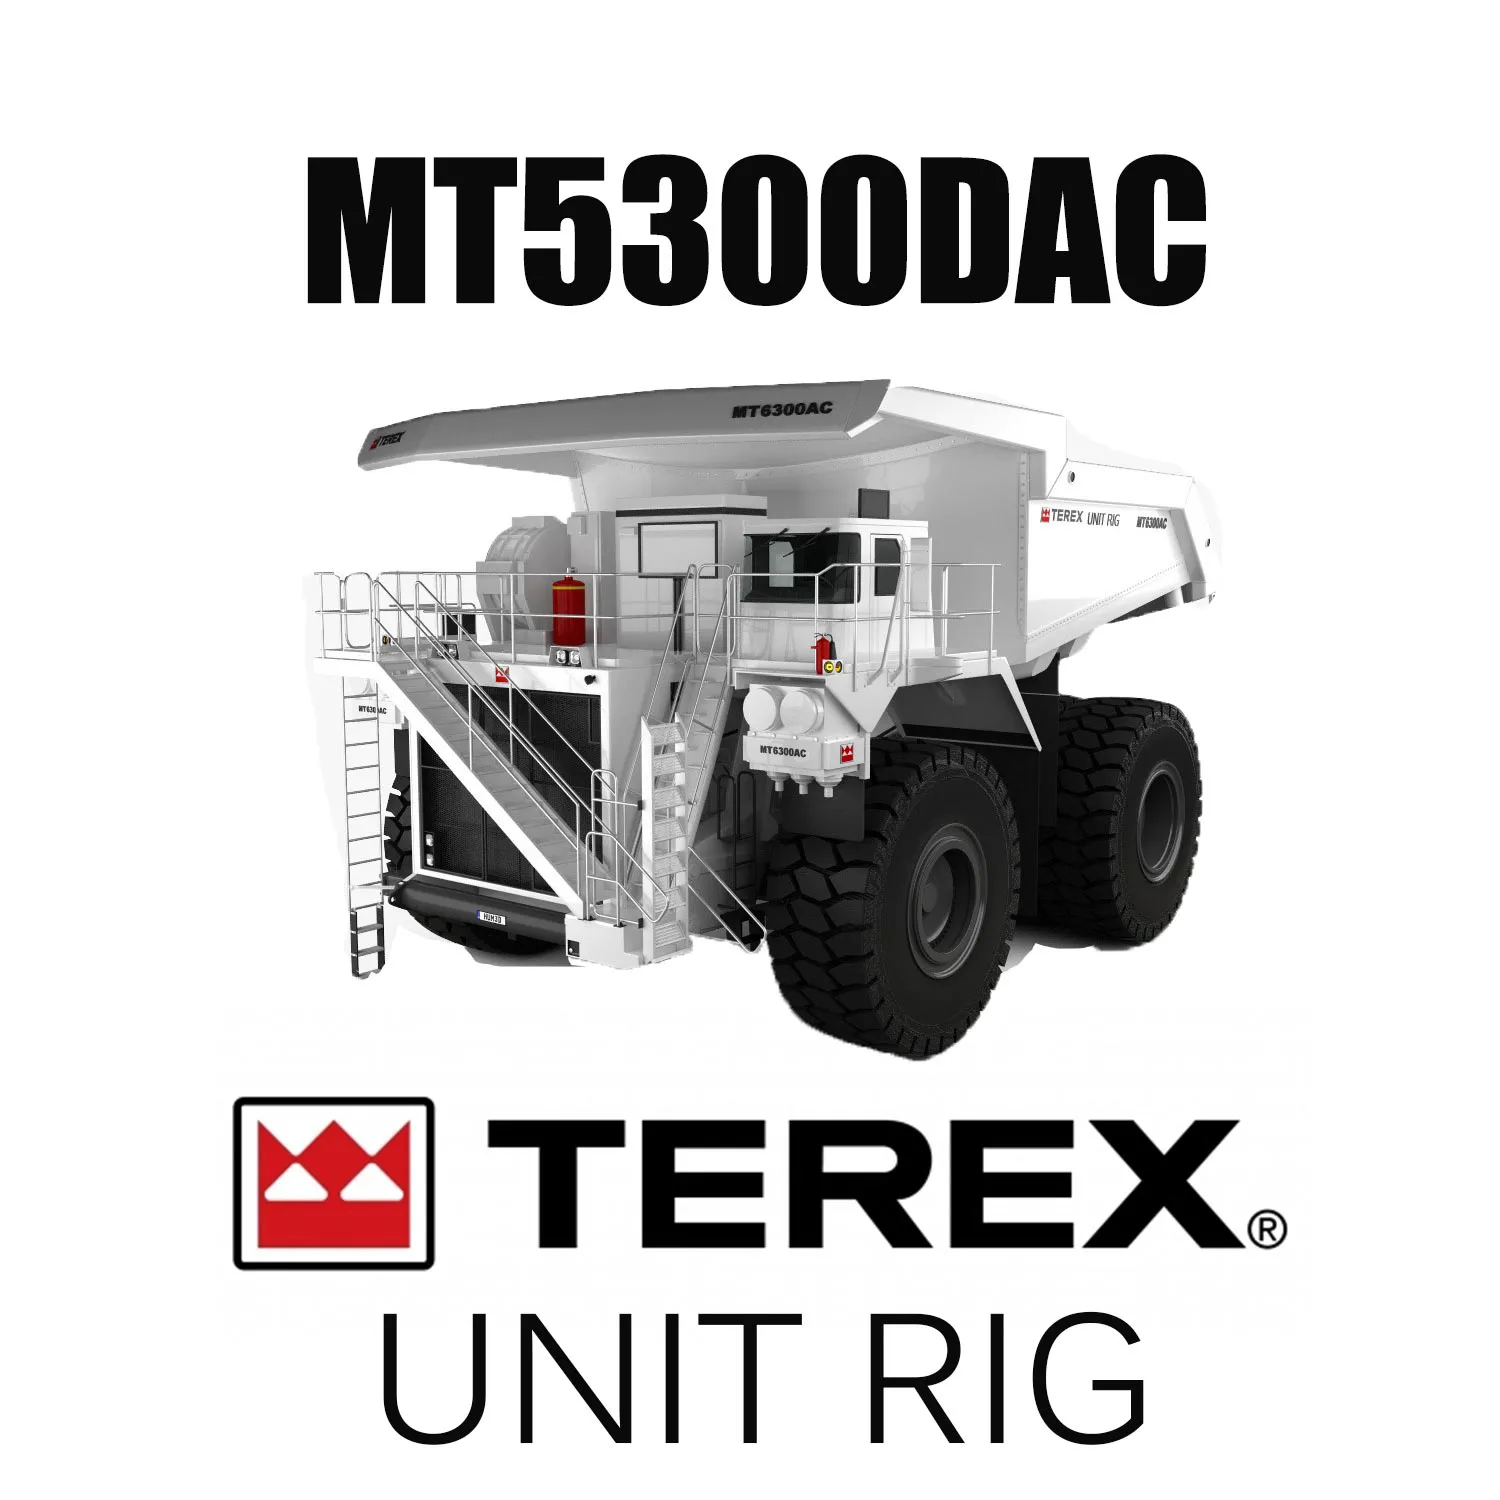 Giant 63-calowe opony OTR do robót ziemnych 53/80R63 do sprzętu górniczego UNIT RIG MT5300DAC